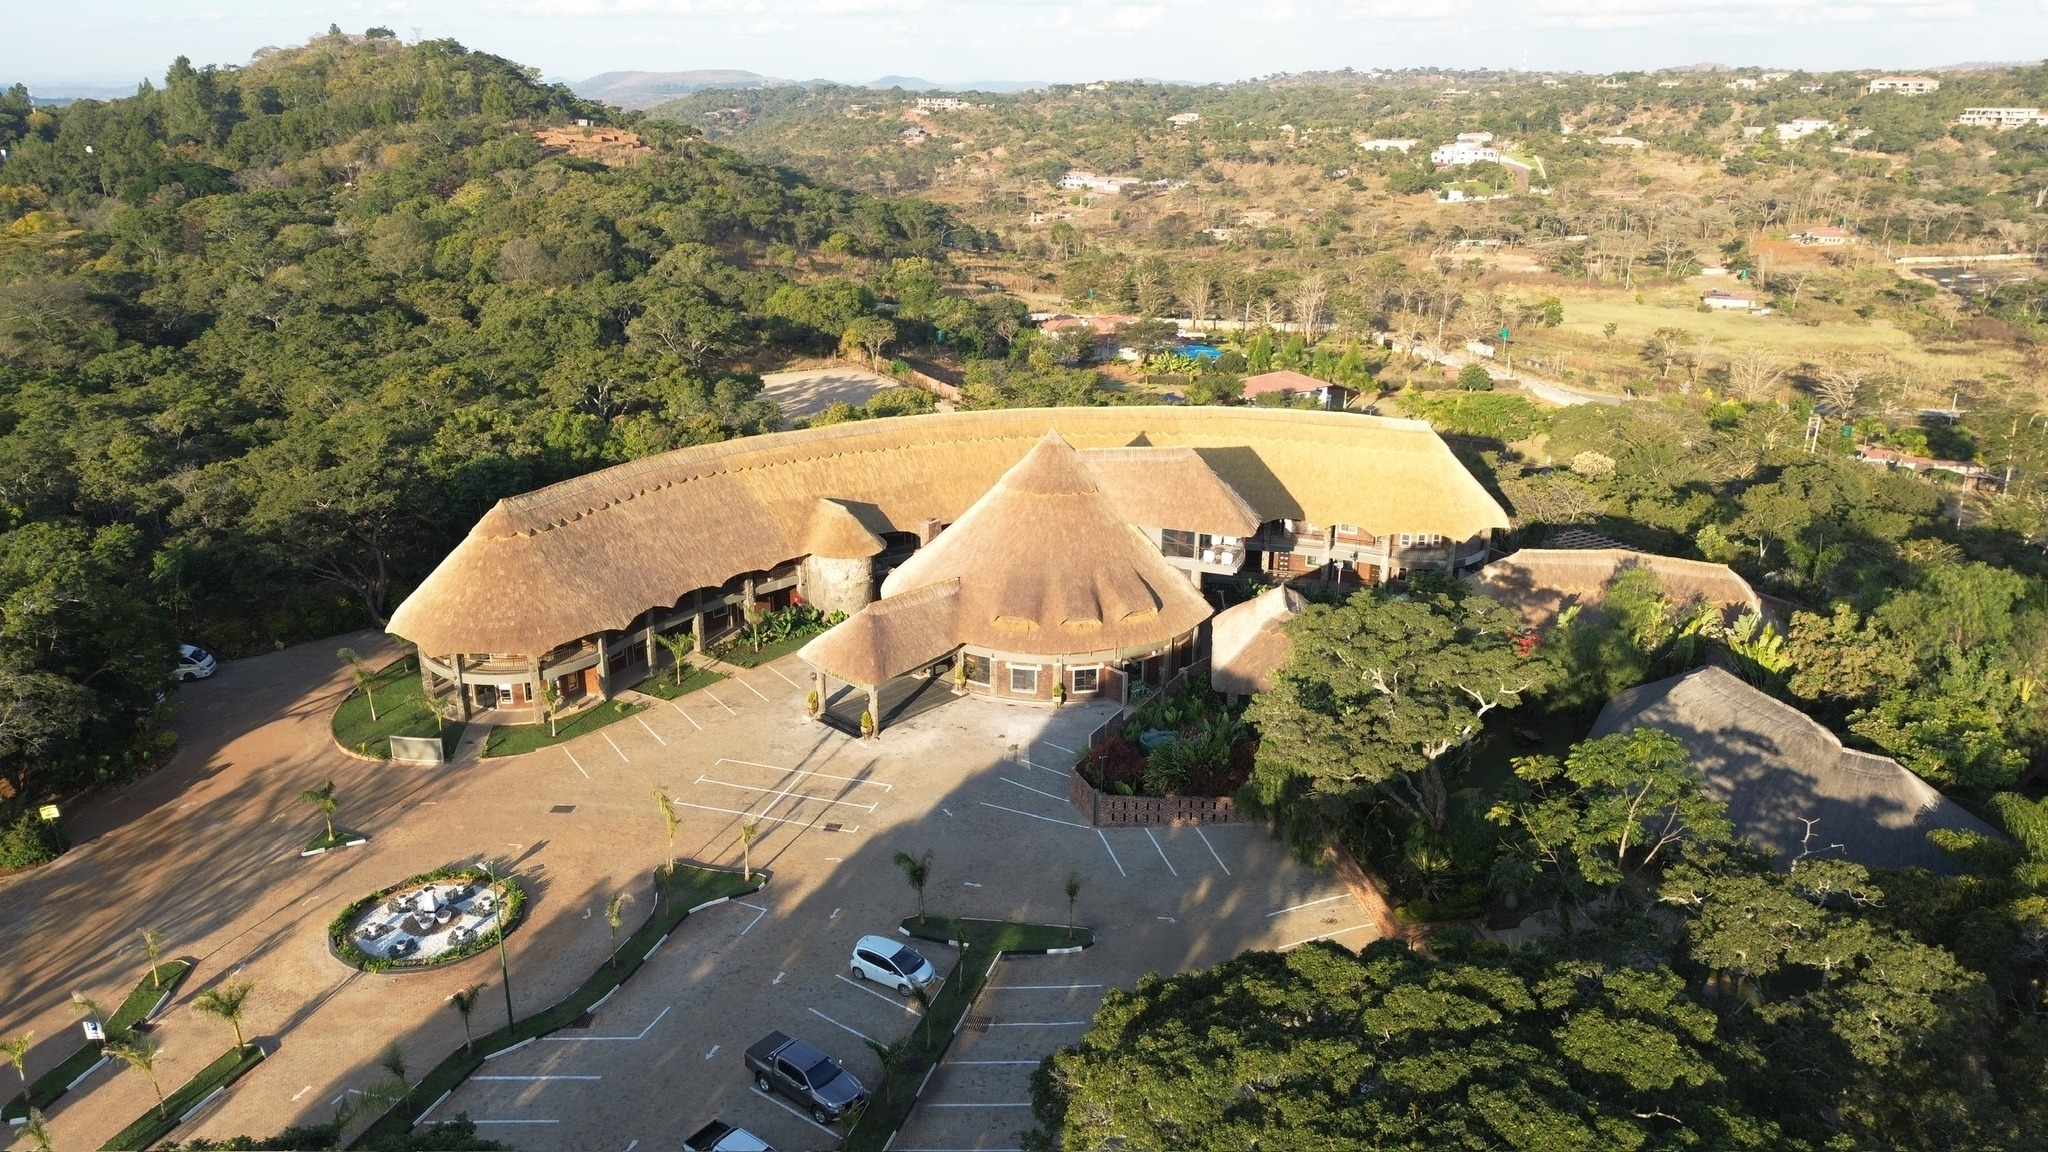 Manna Safari Lodge